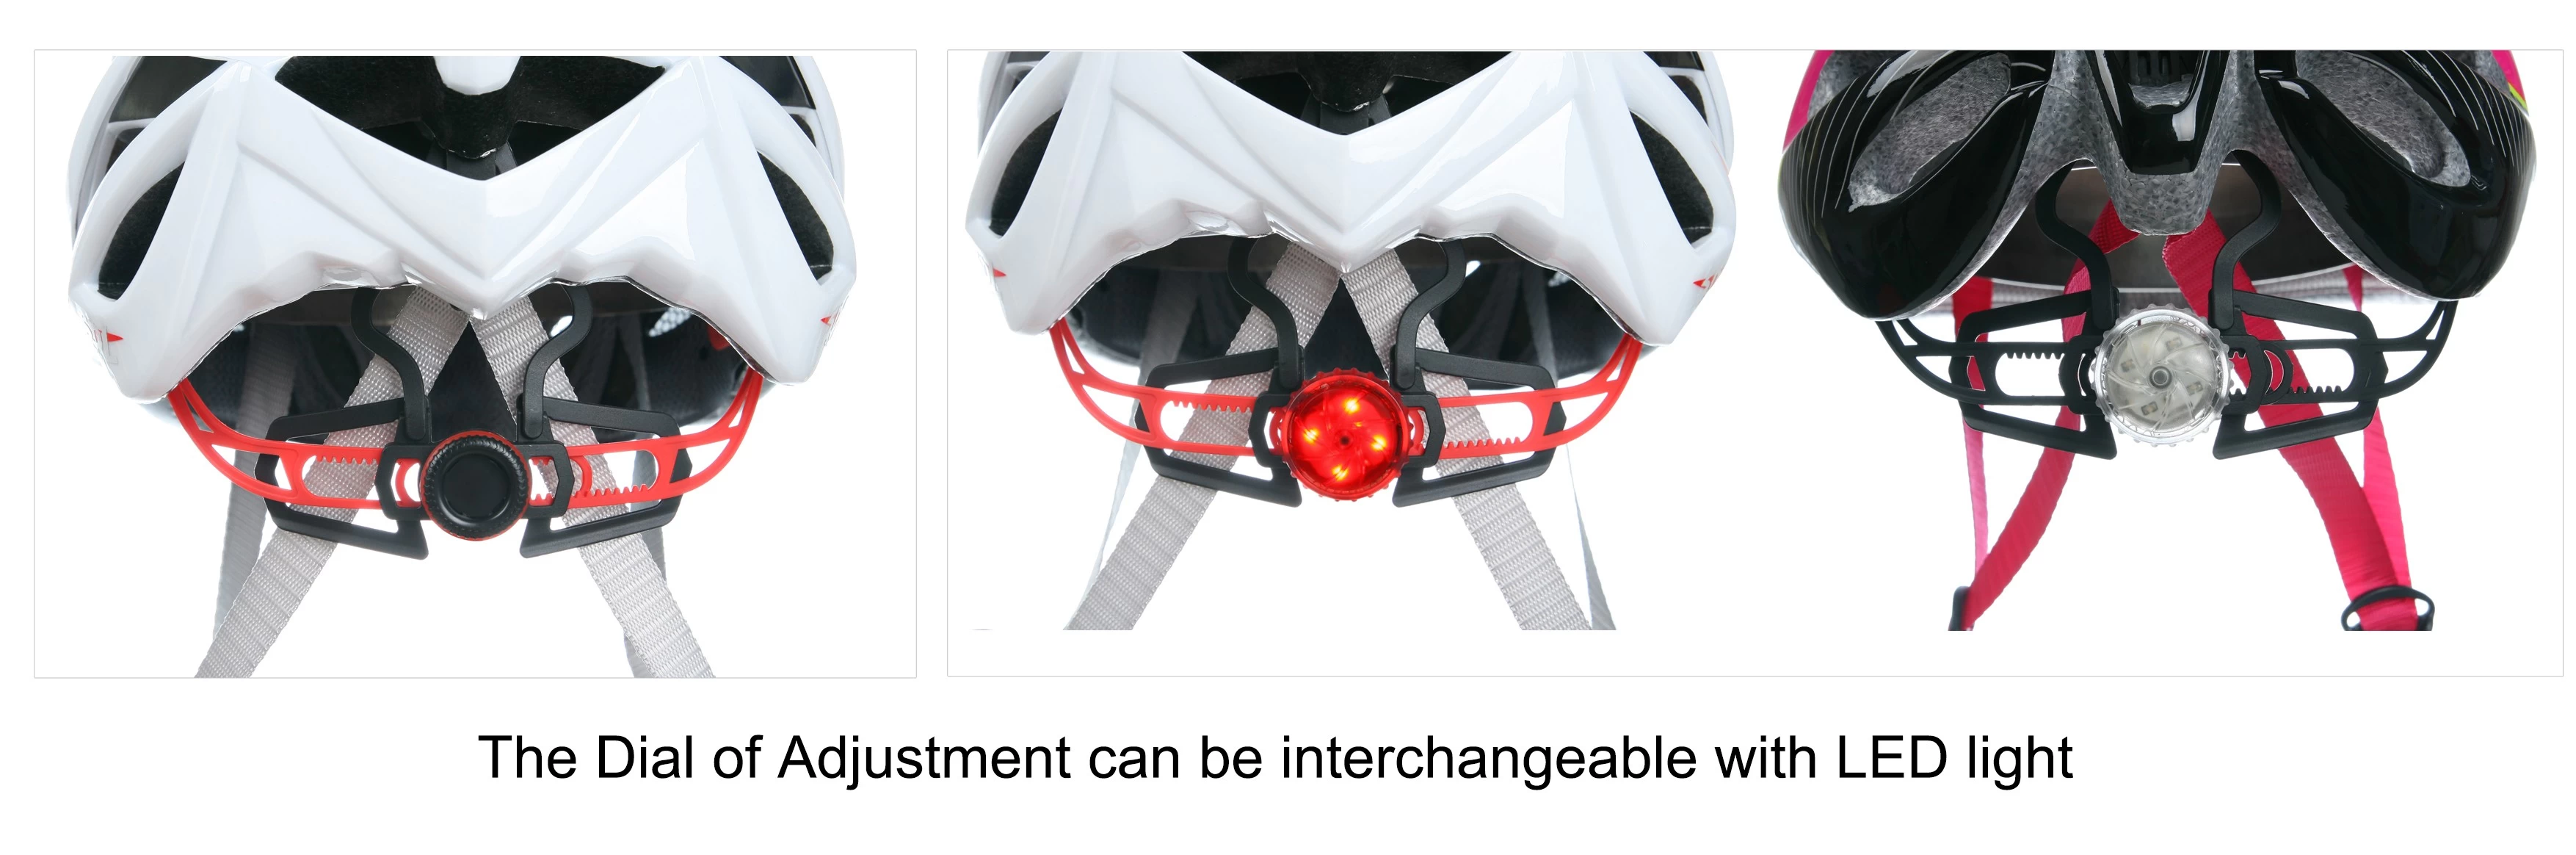 bike helmet with lights